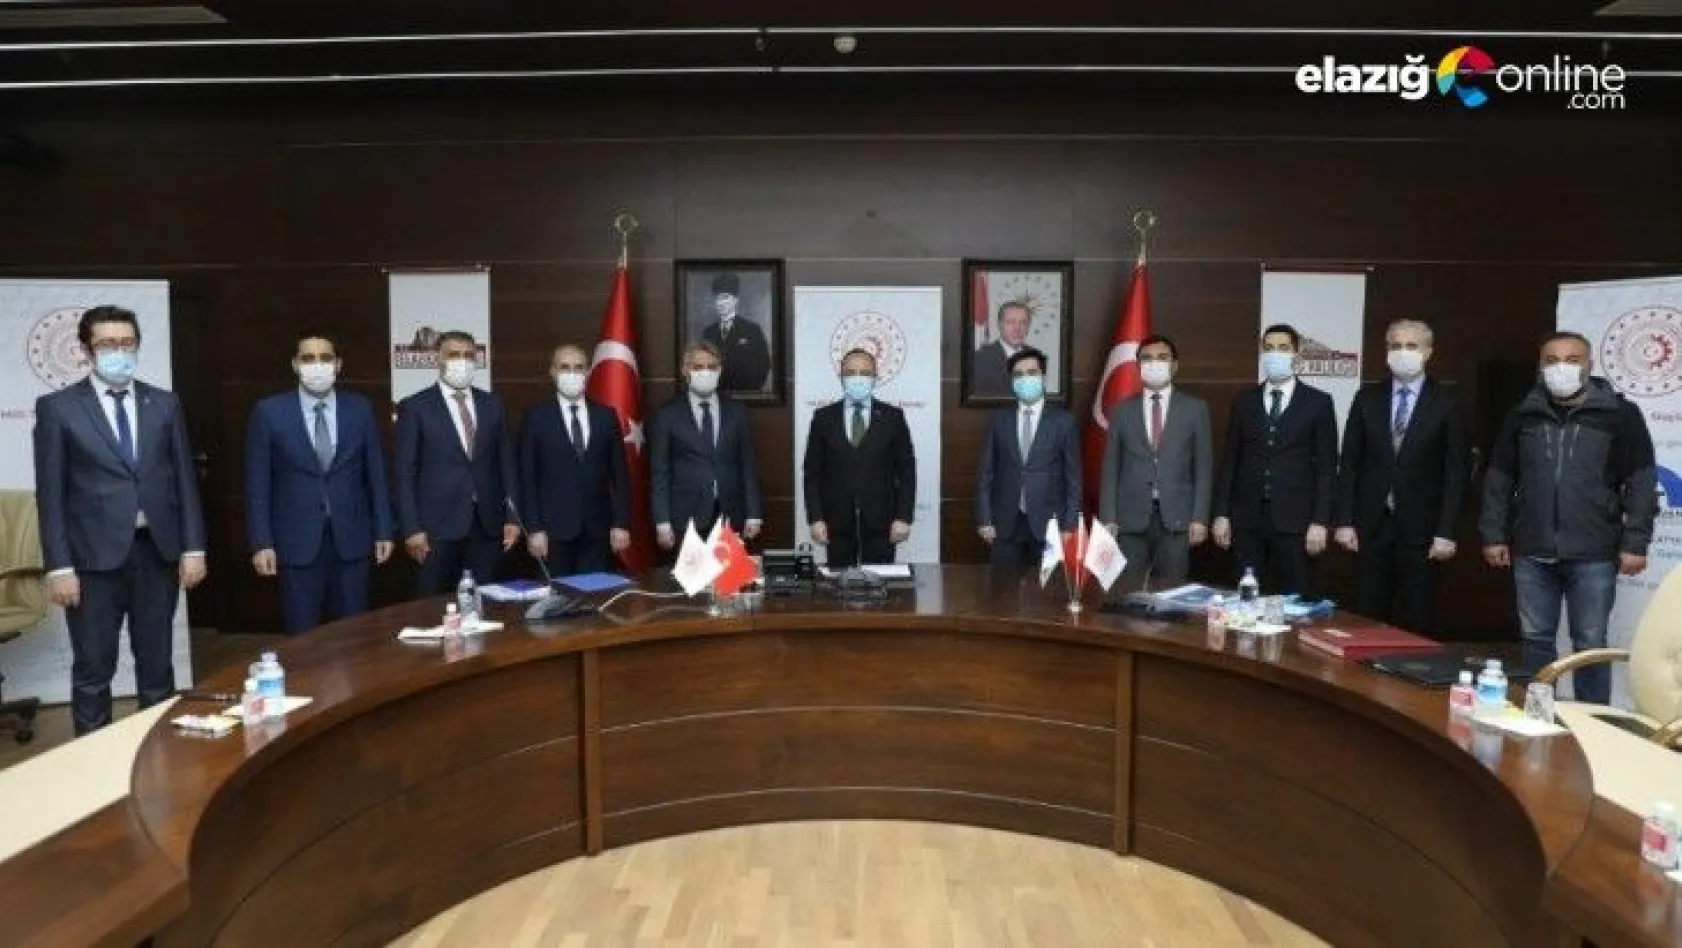 Elazığ'ın turizm potansiyeline destek, 3 projenin imzaları atıldı